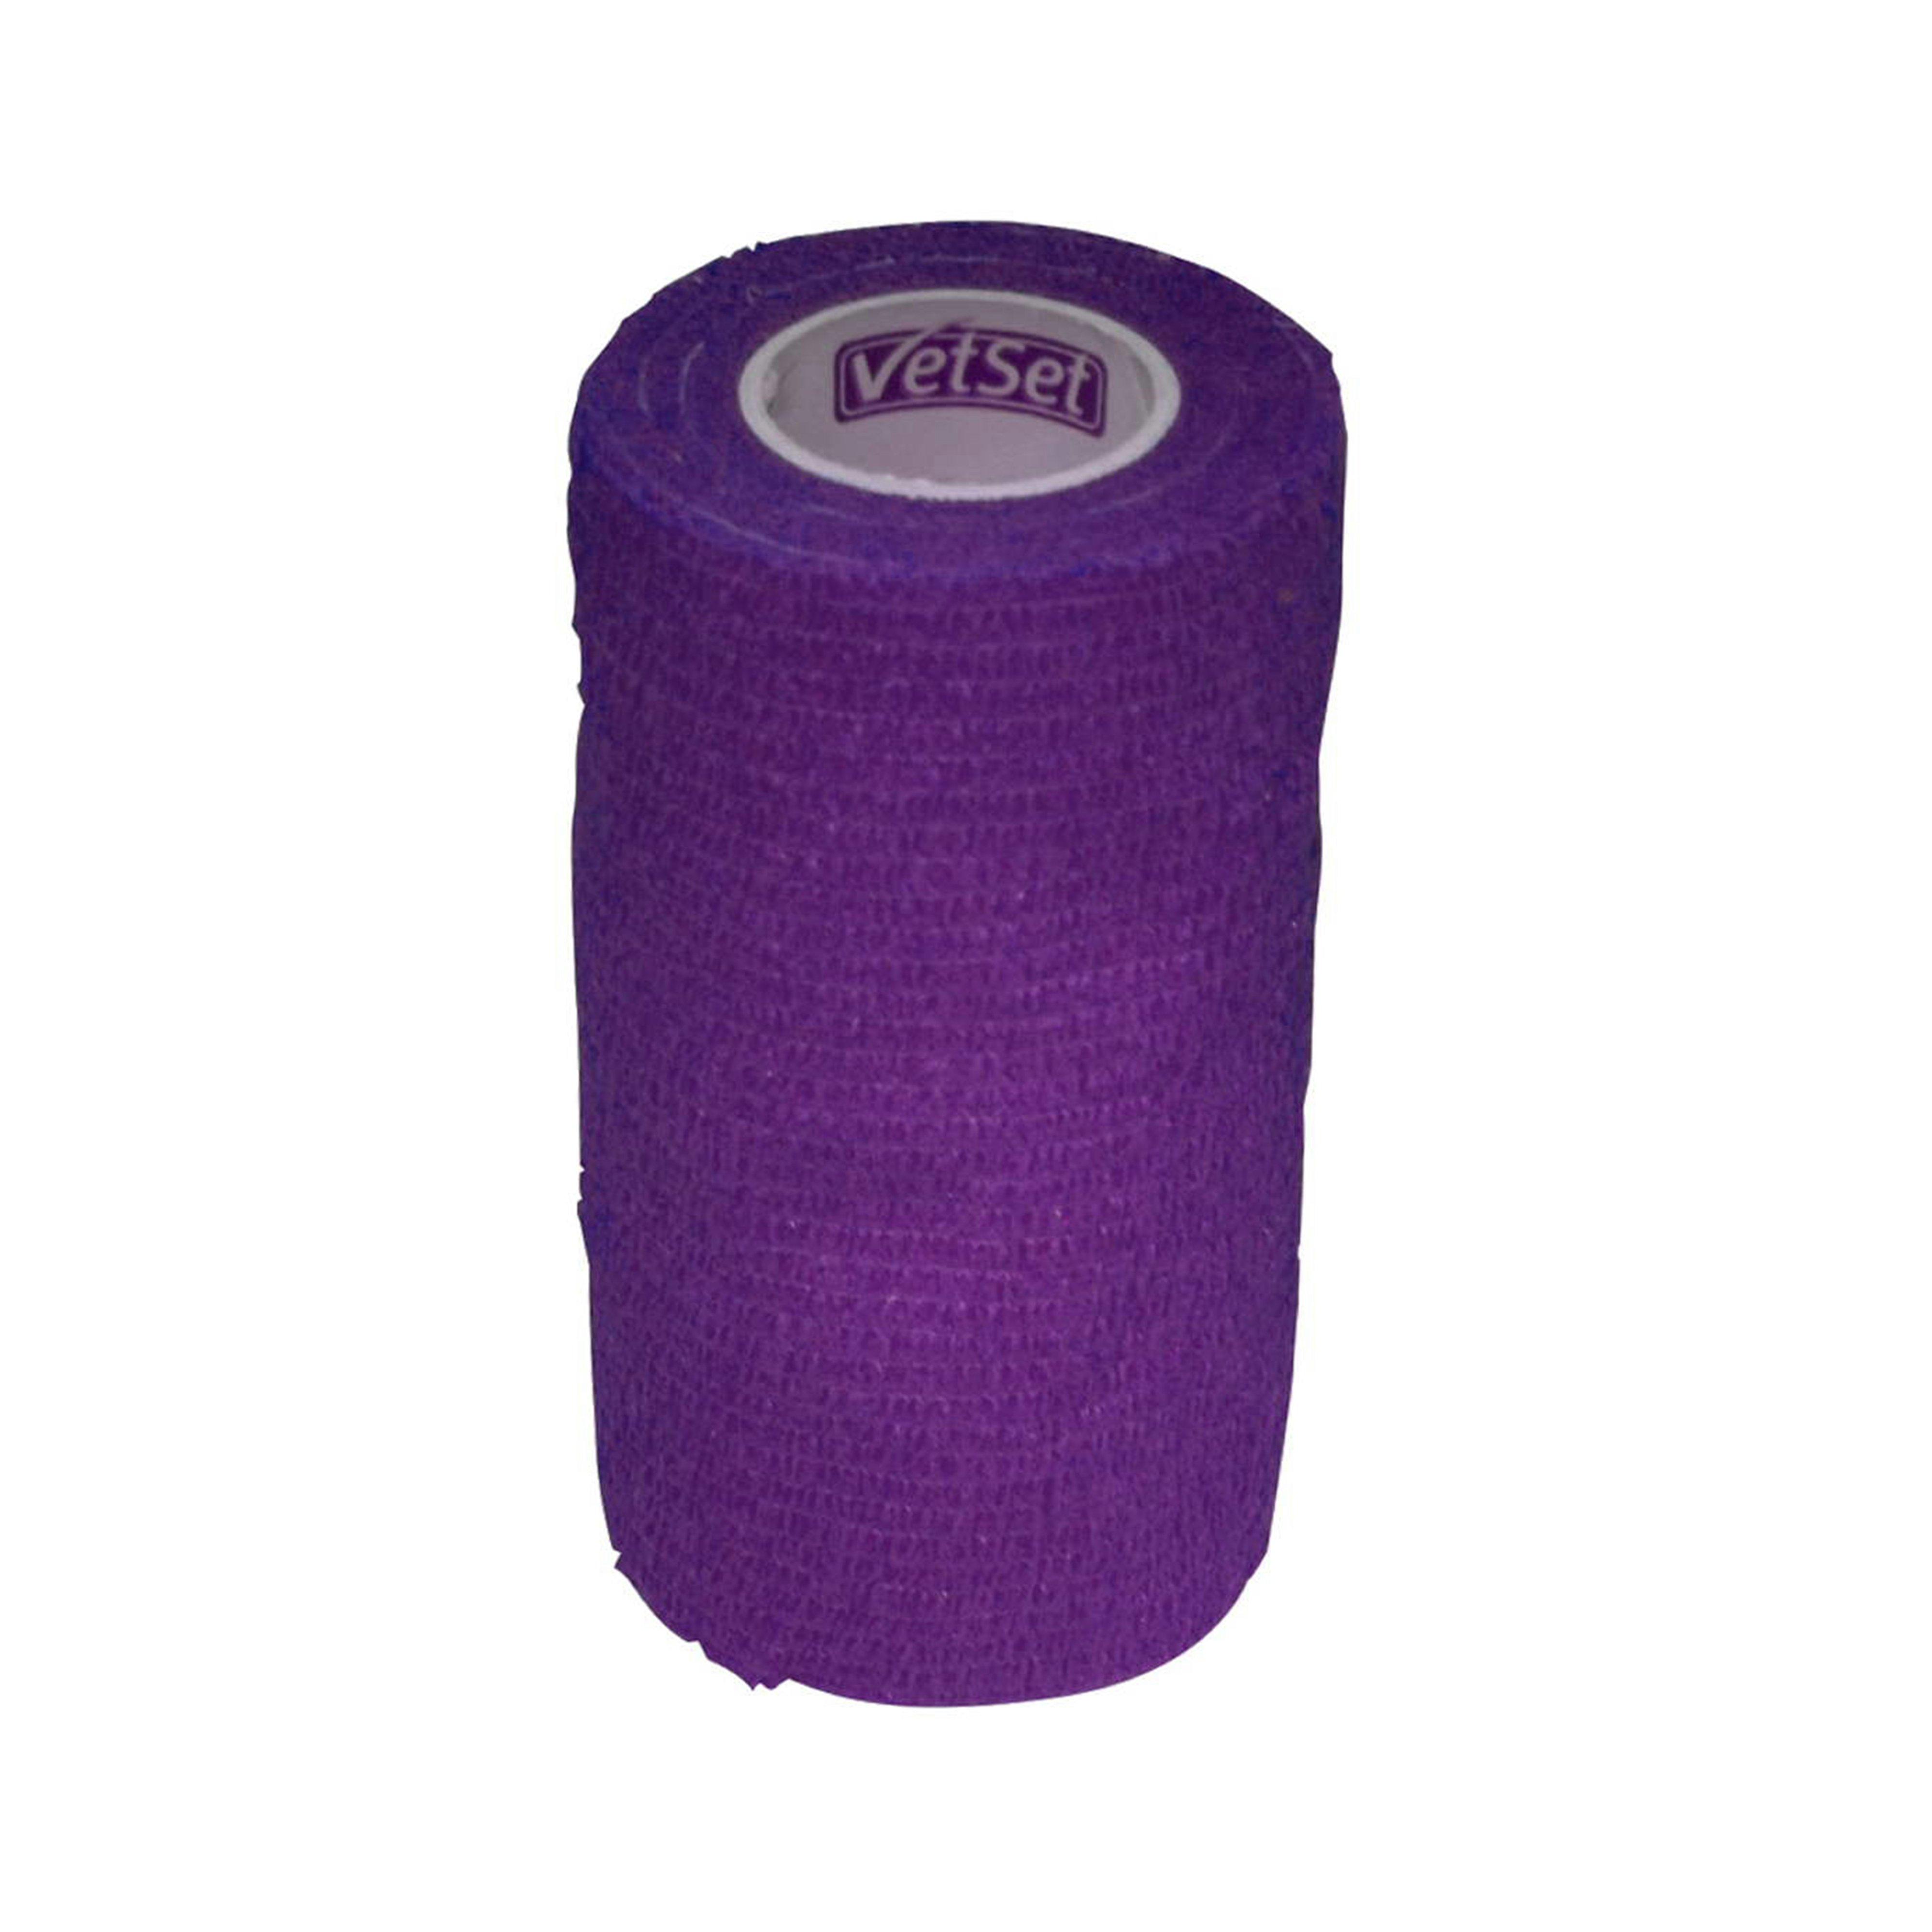 Wraptec Cohesive Bandage Purple